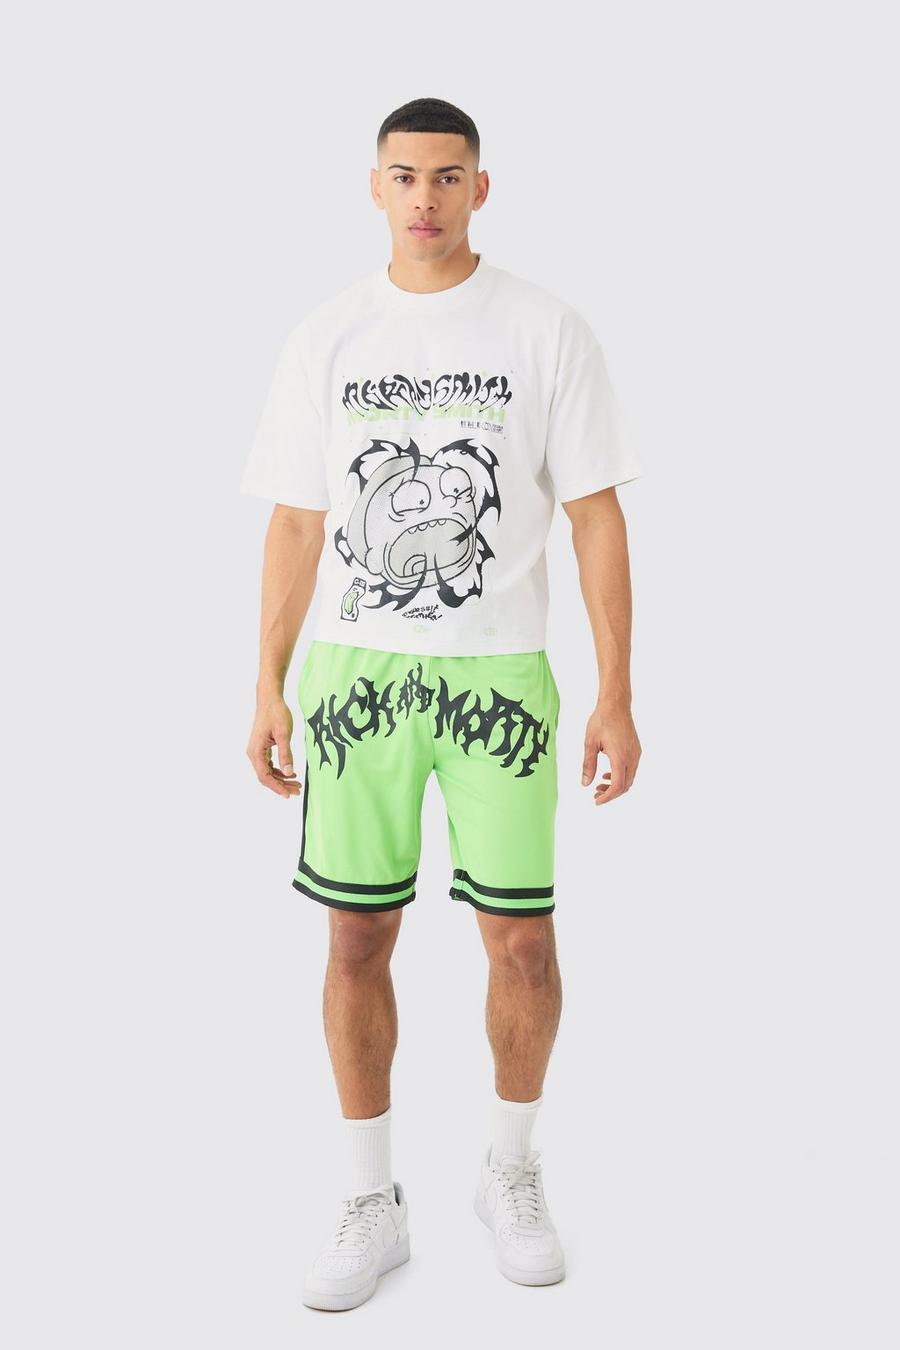 Kastiges Oversize T-Shirt und Mesh-Shorts mit lizenziertem Rick & Morty Print, Green